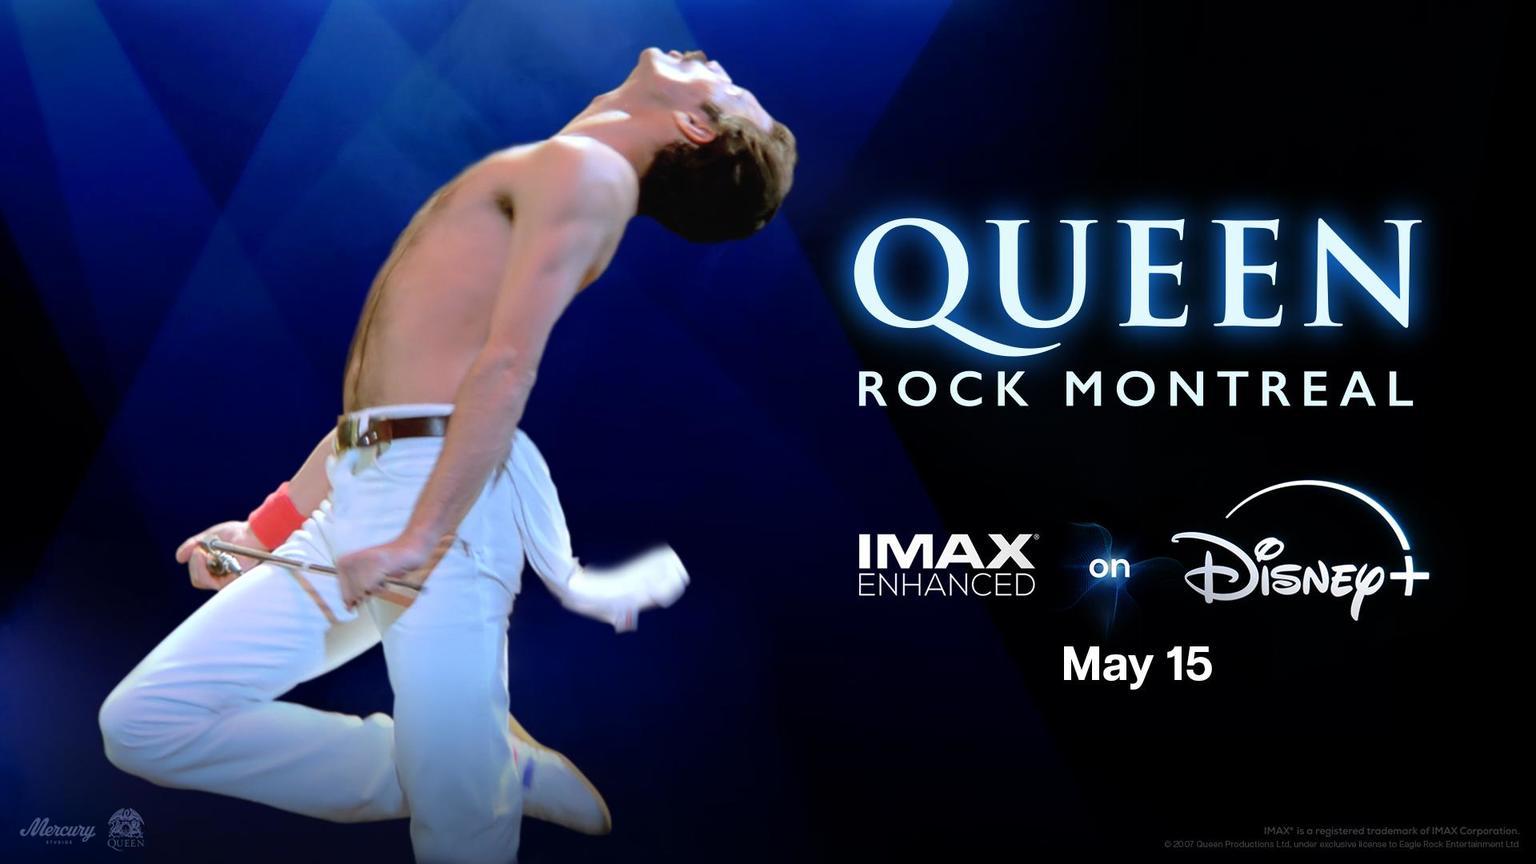 Queen Rock Montreal - Disney+